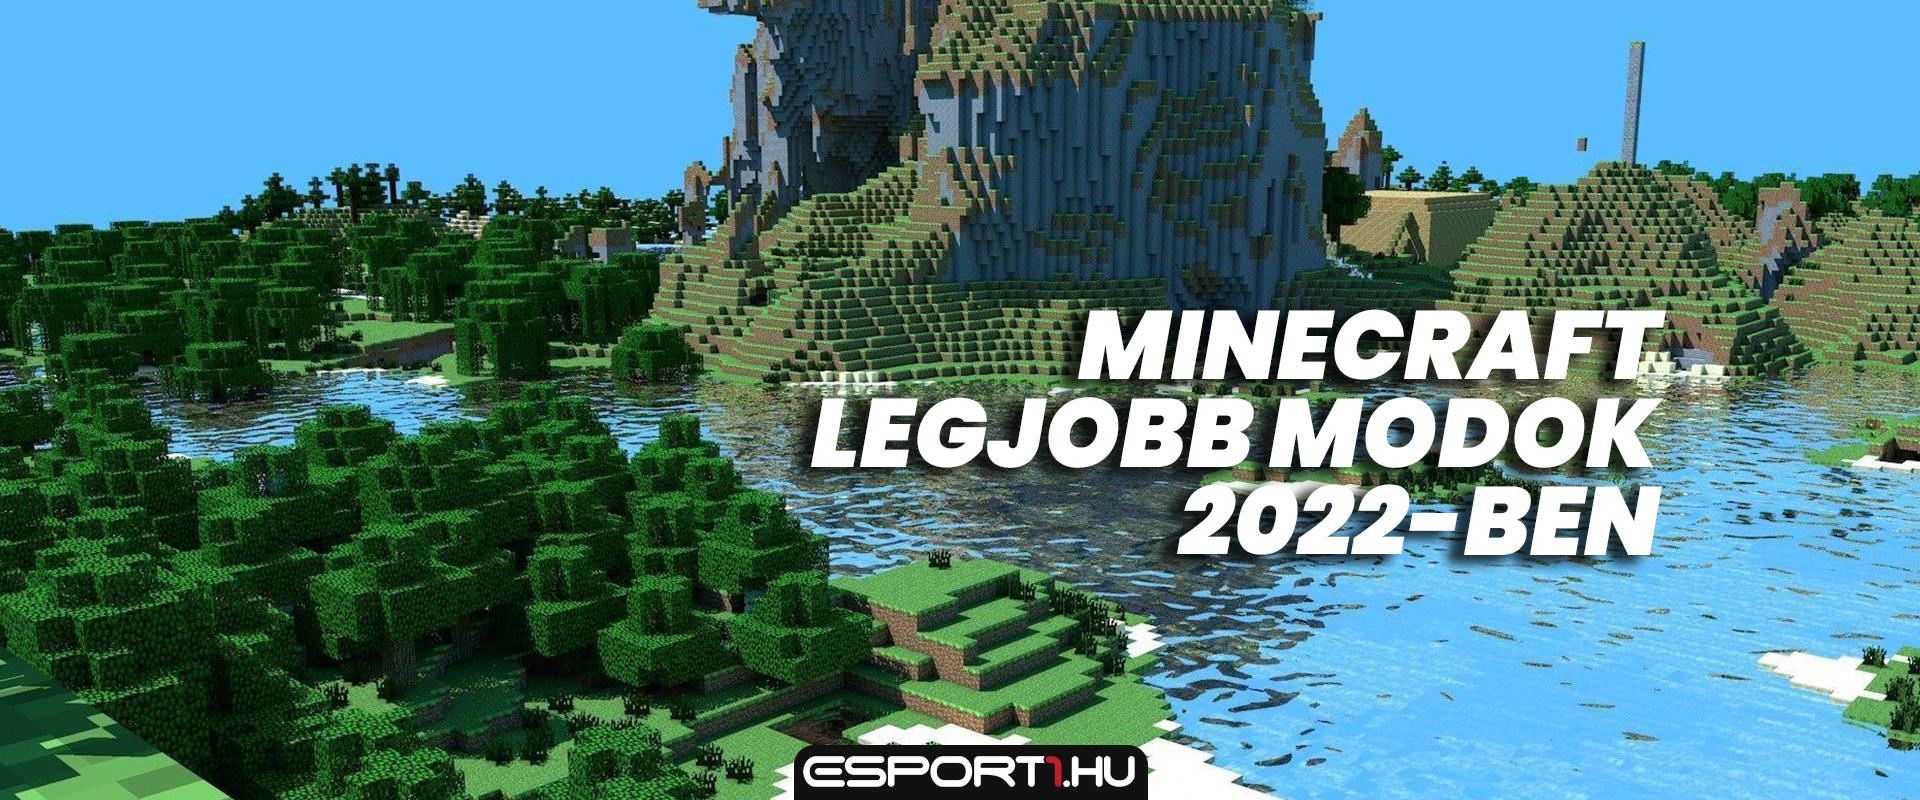 Ezek a legjobb Minecraft modok 2022-ben